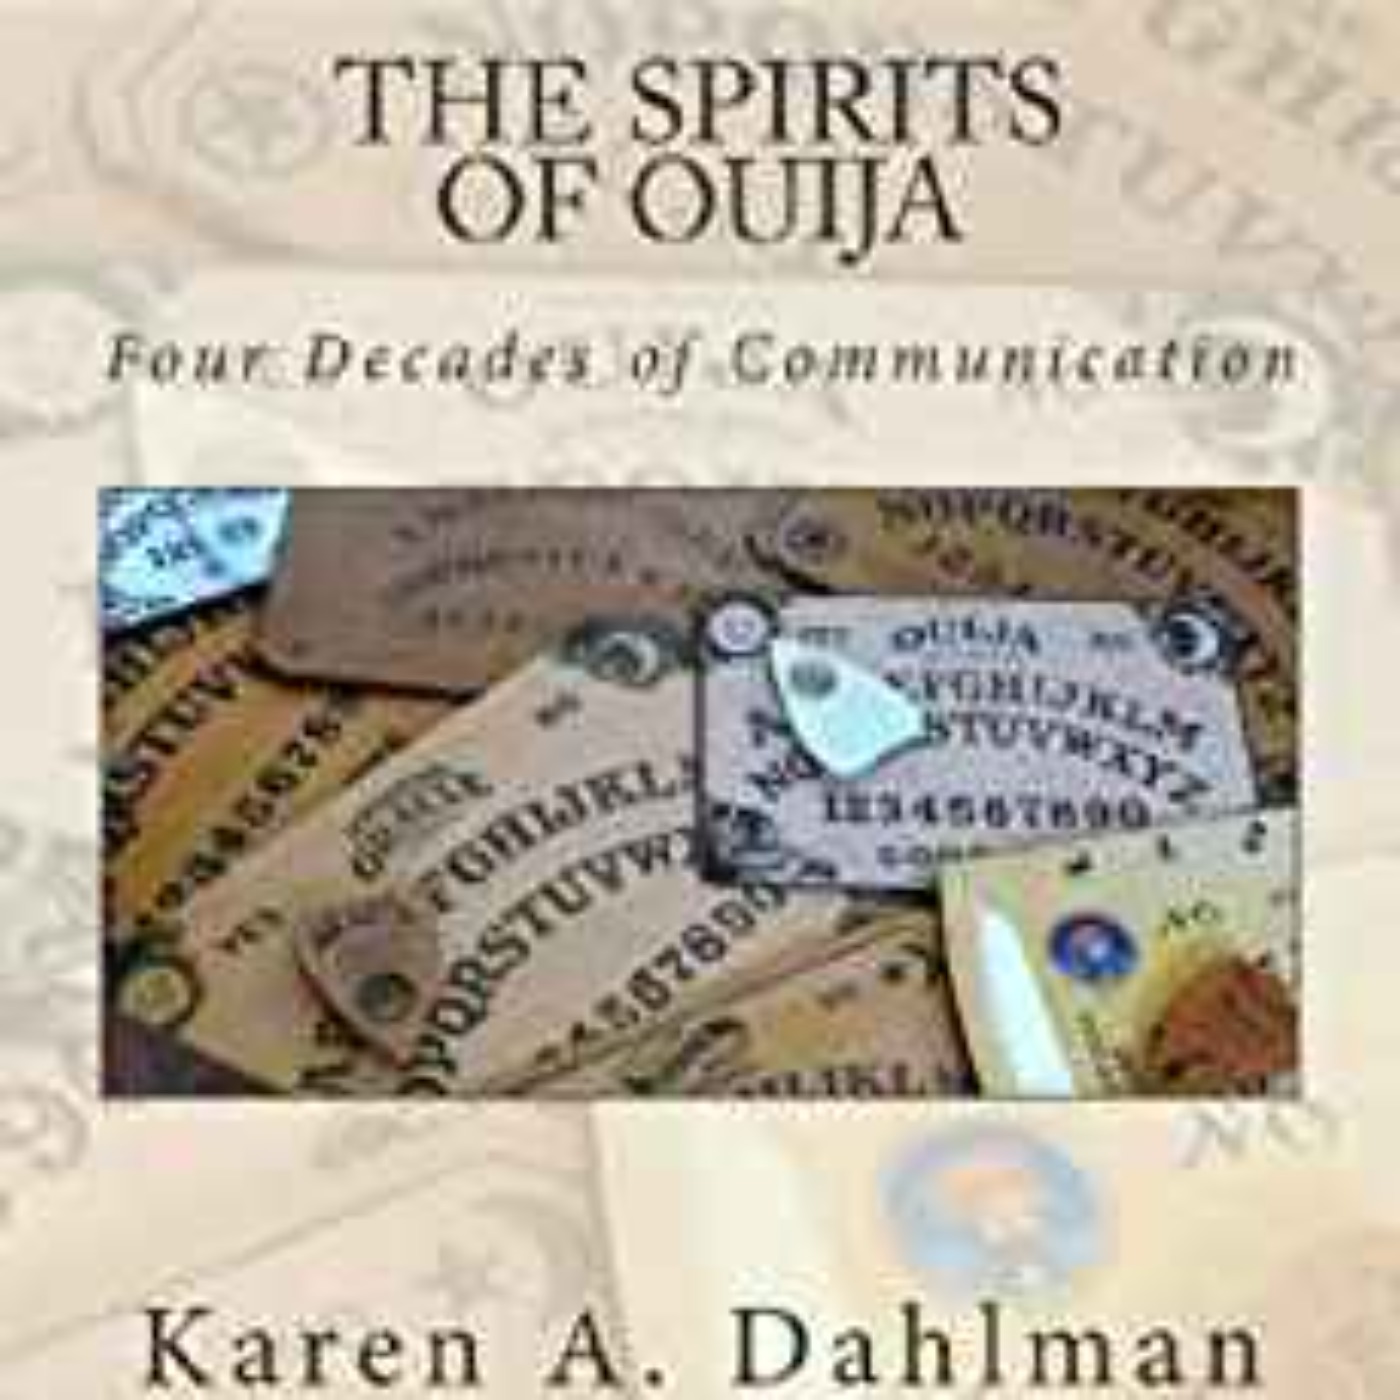 Karen A. Dahlman - THE SPIRITS OF OUIJA